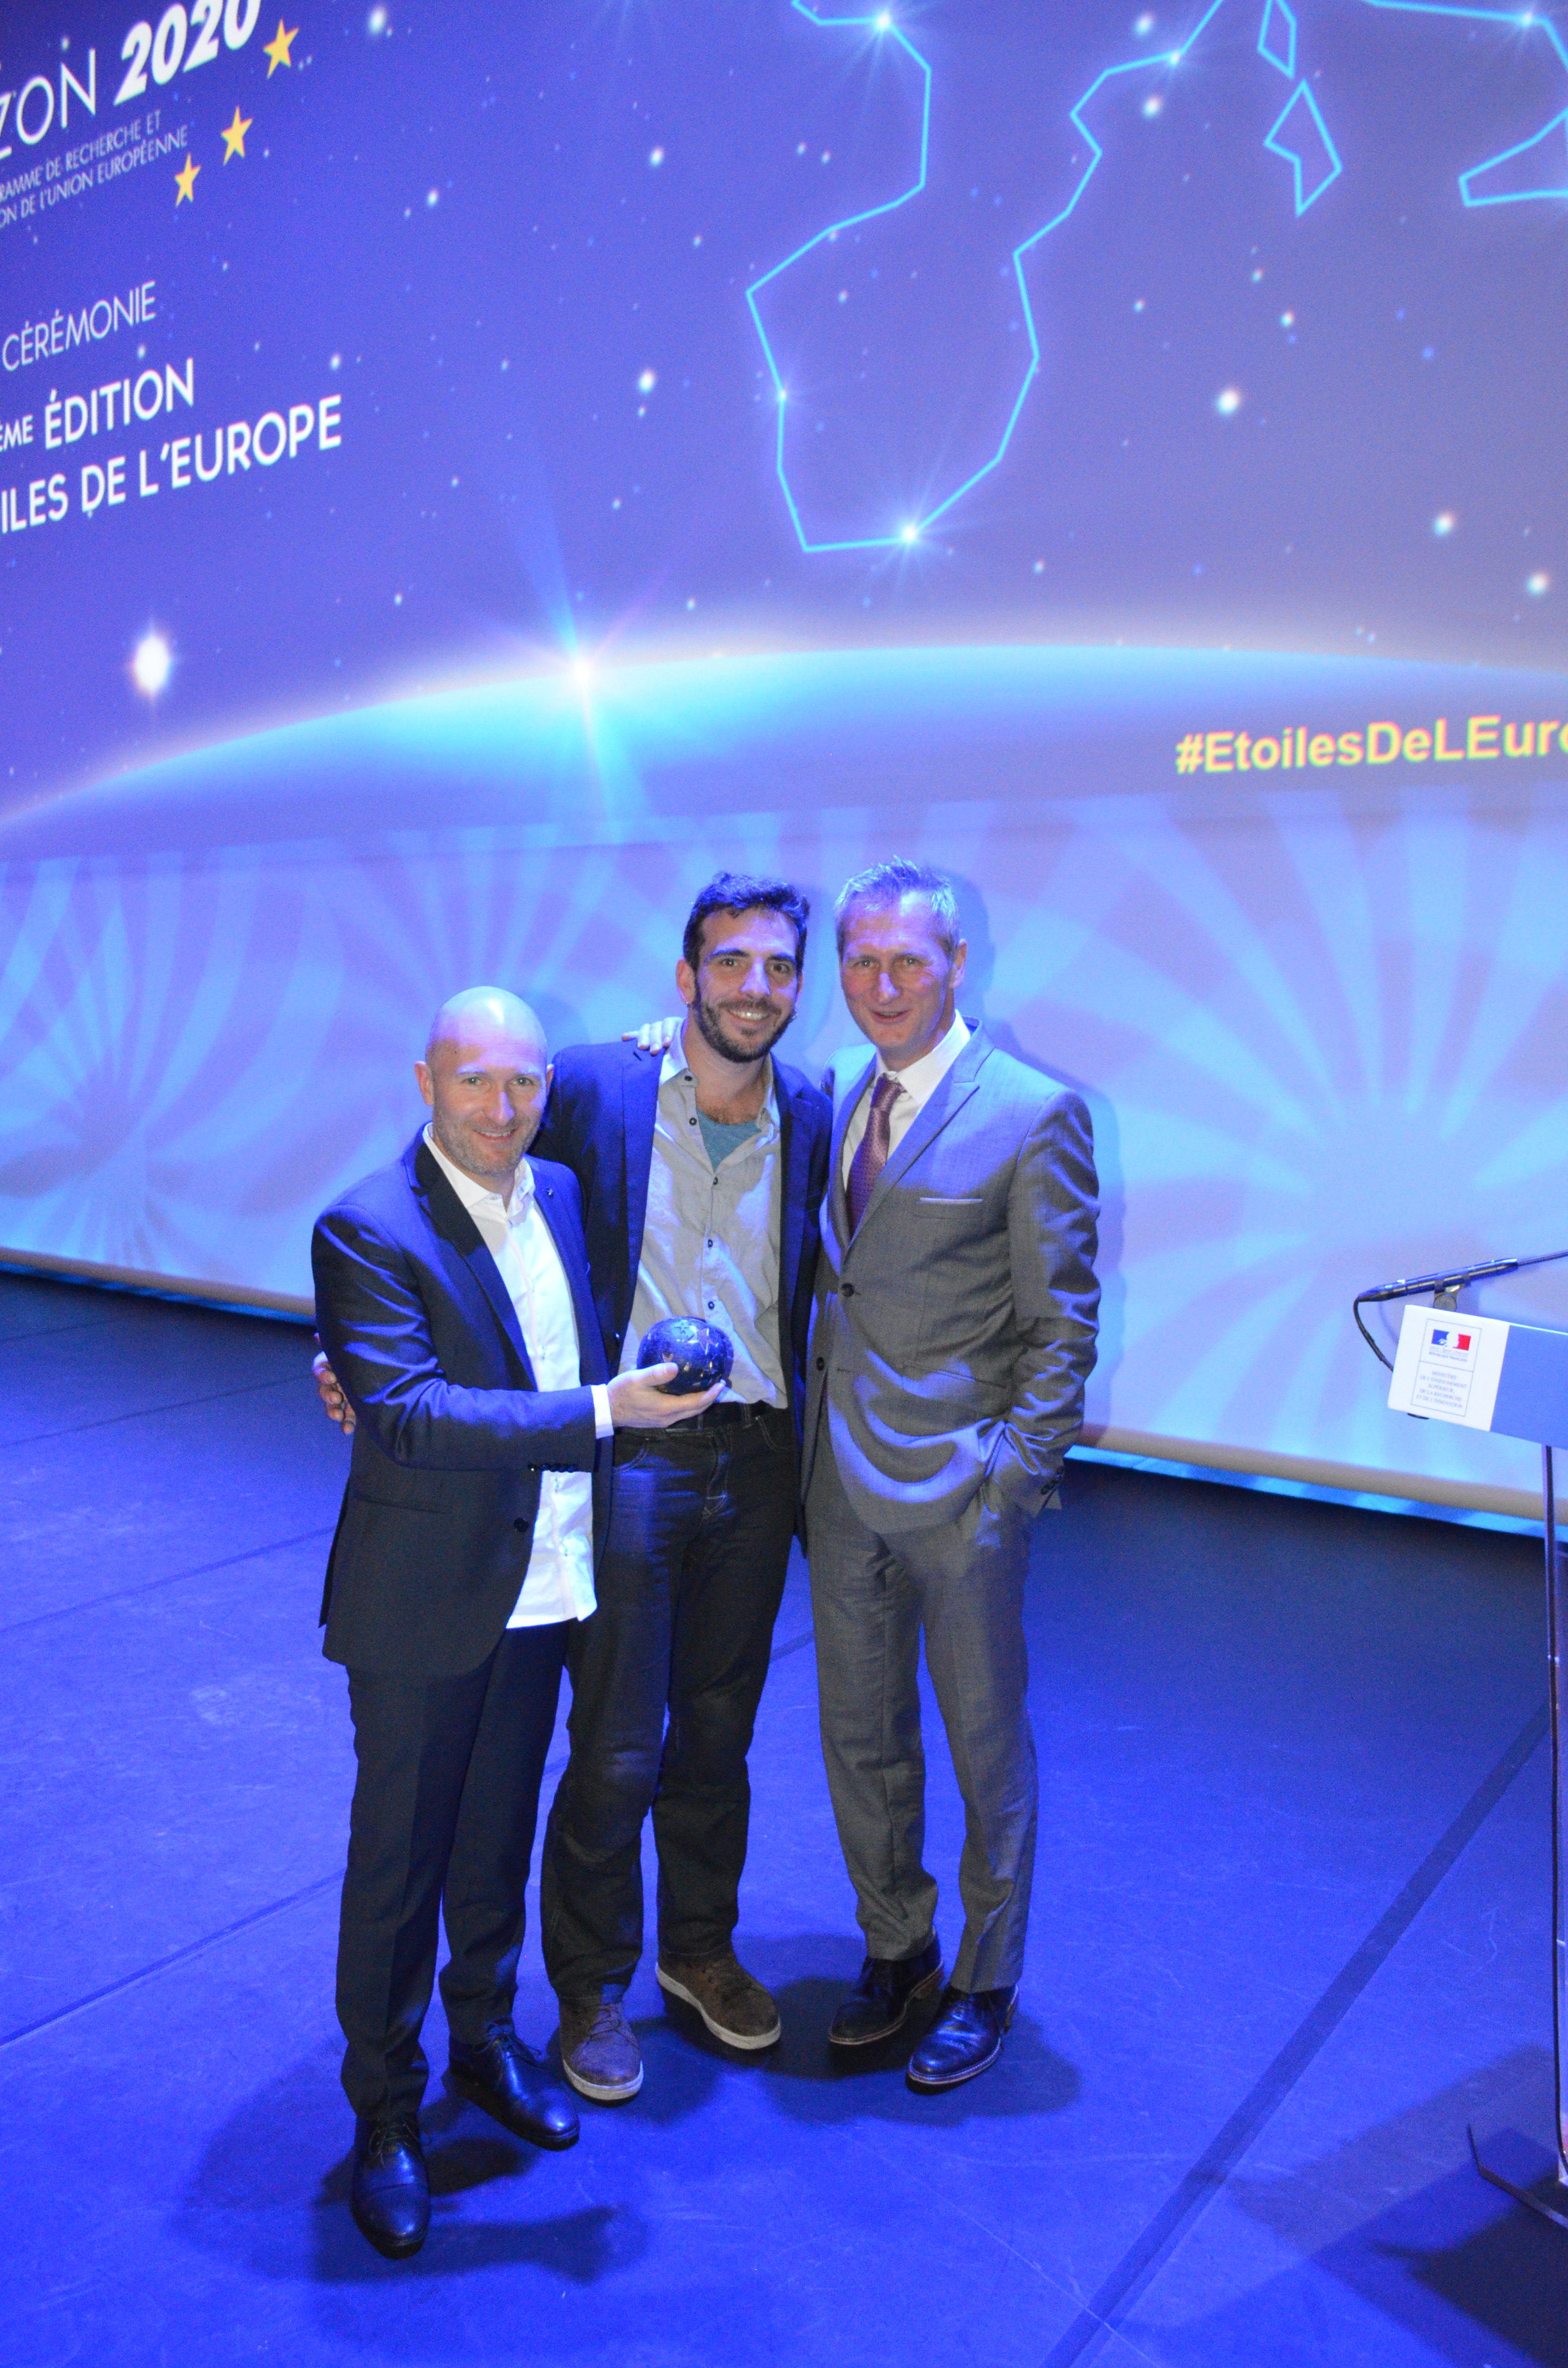 EuroMov, laureate of the 2017 European Stars trophy